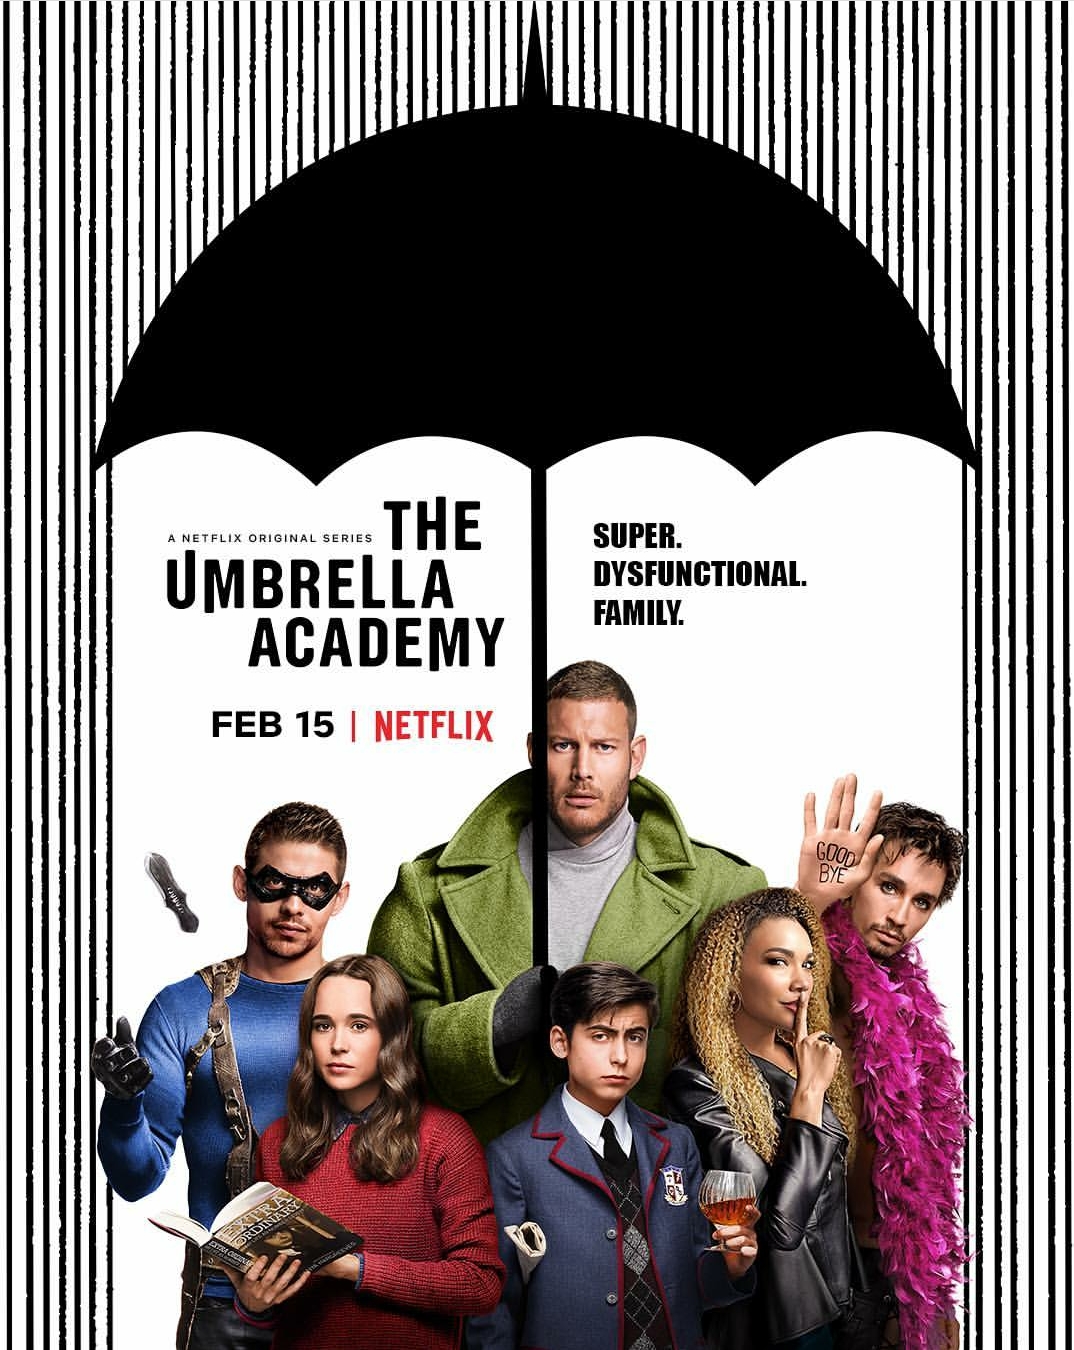 RÃ©sultat de recherche d'images pour "umbrella academy"